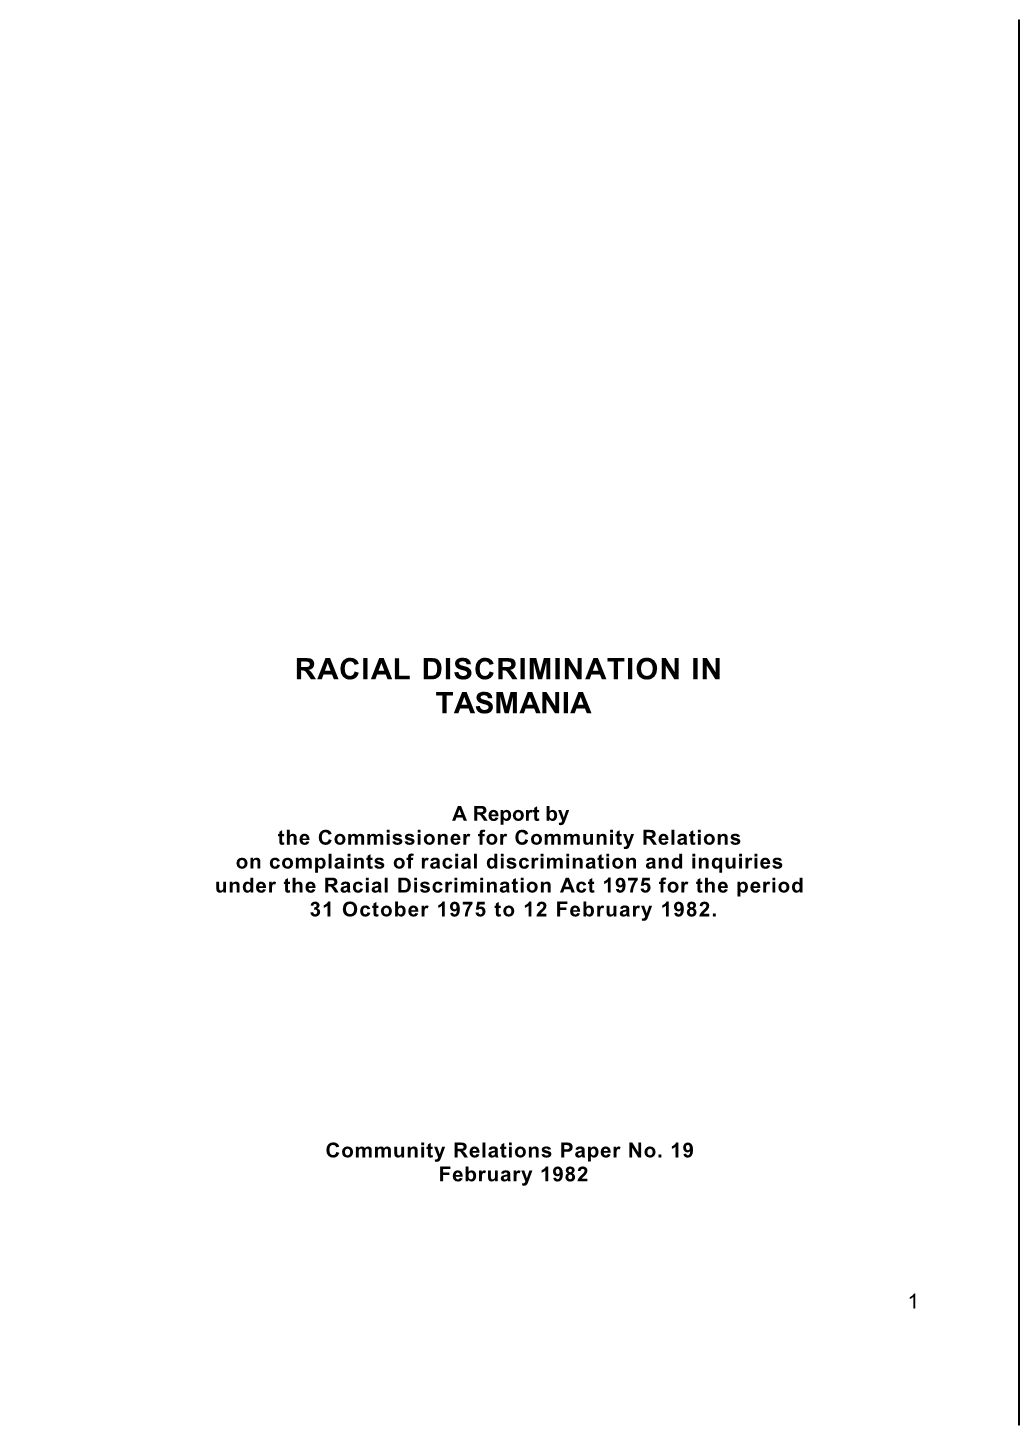 Racial Discrimination in Tasmania